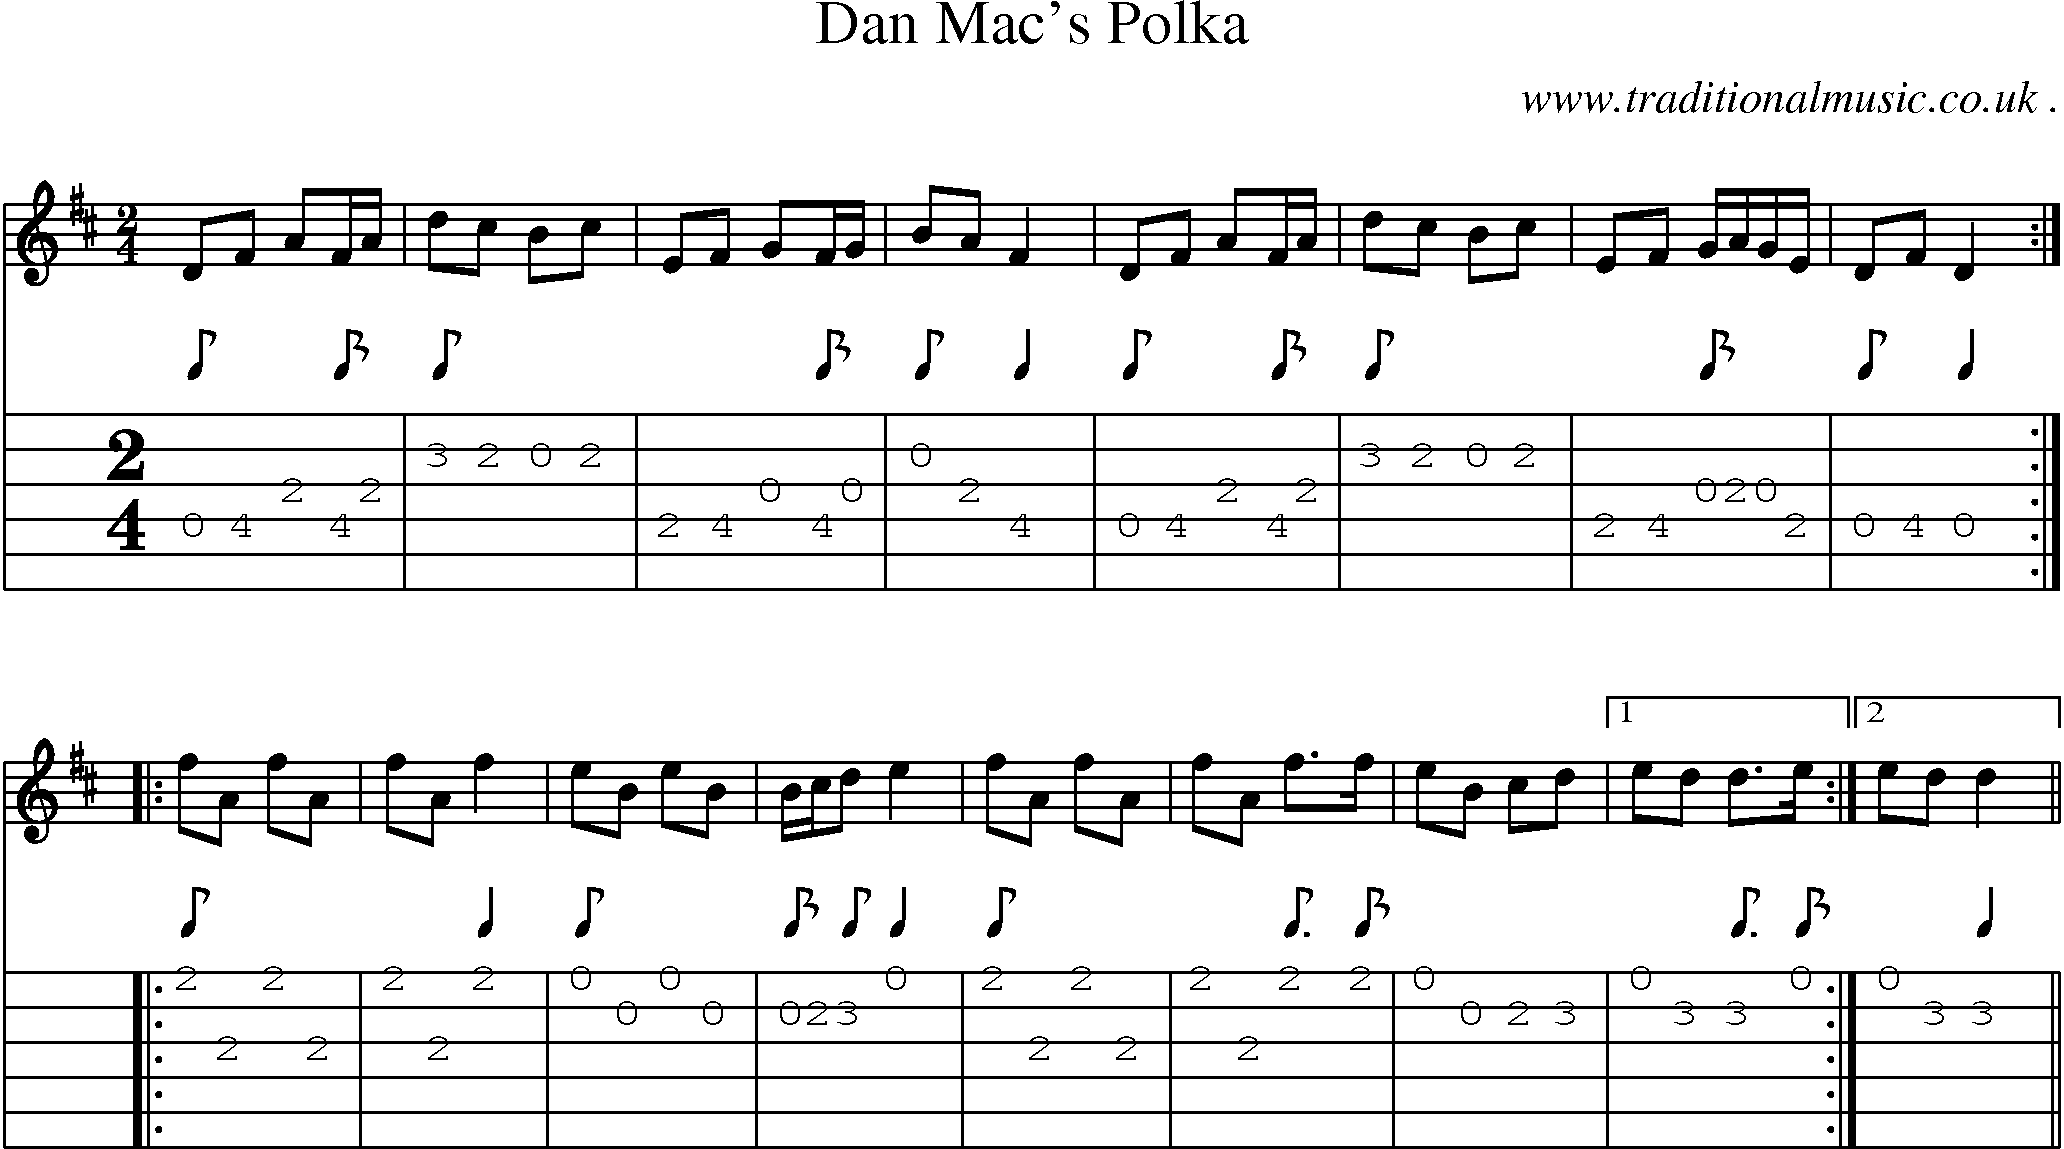 Sheet-Music and Guitar Tabs for Dan Macs Polka